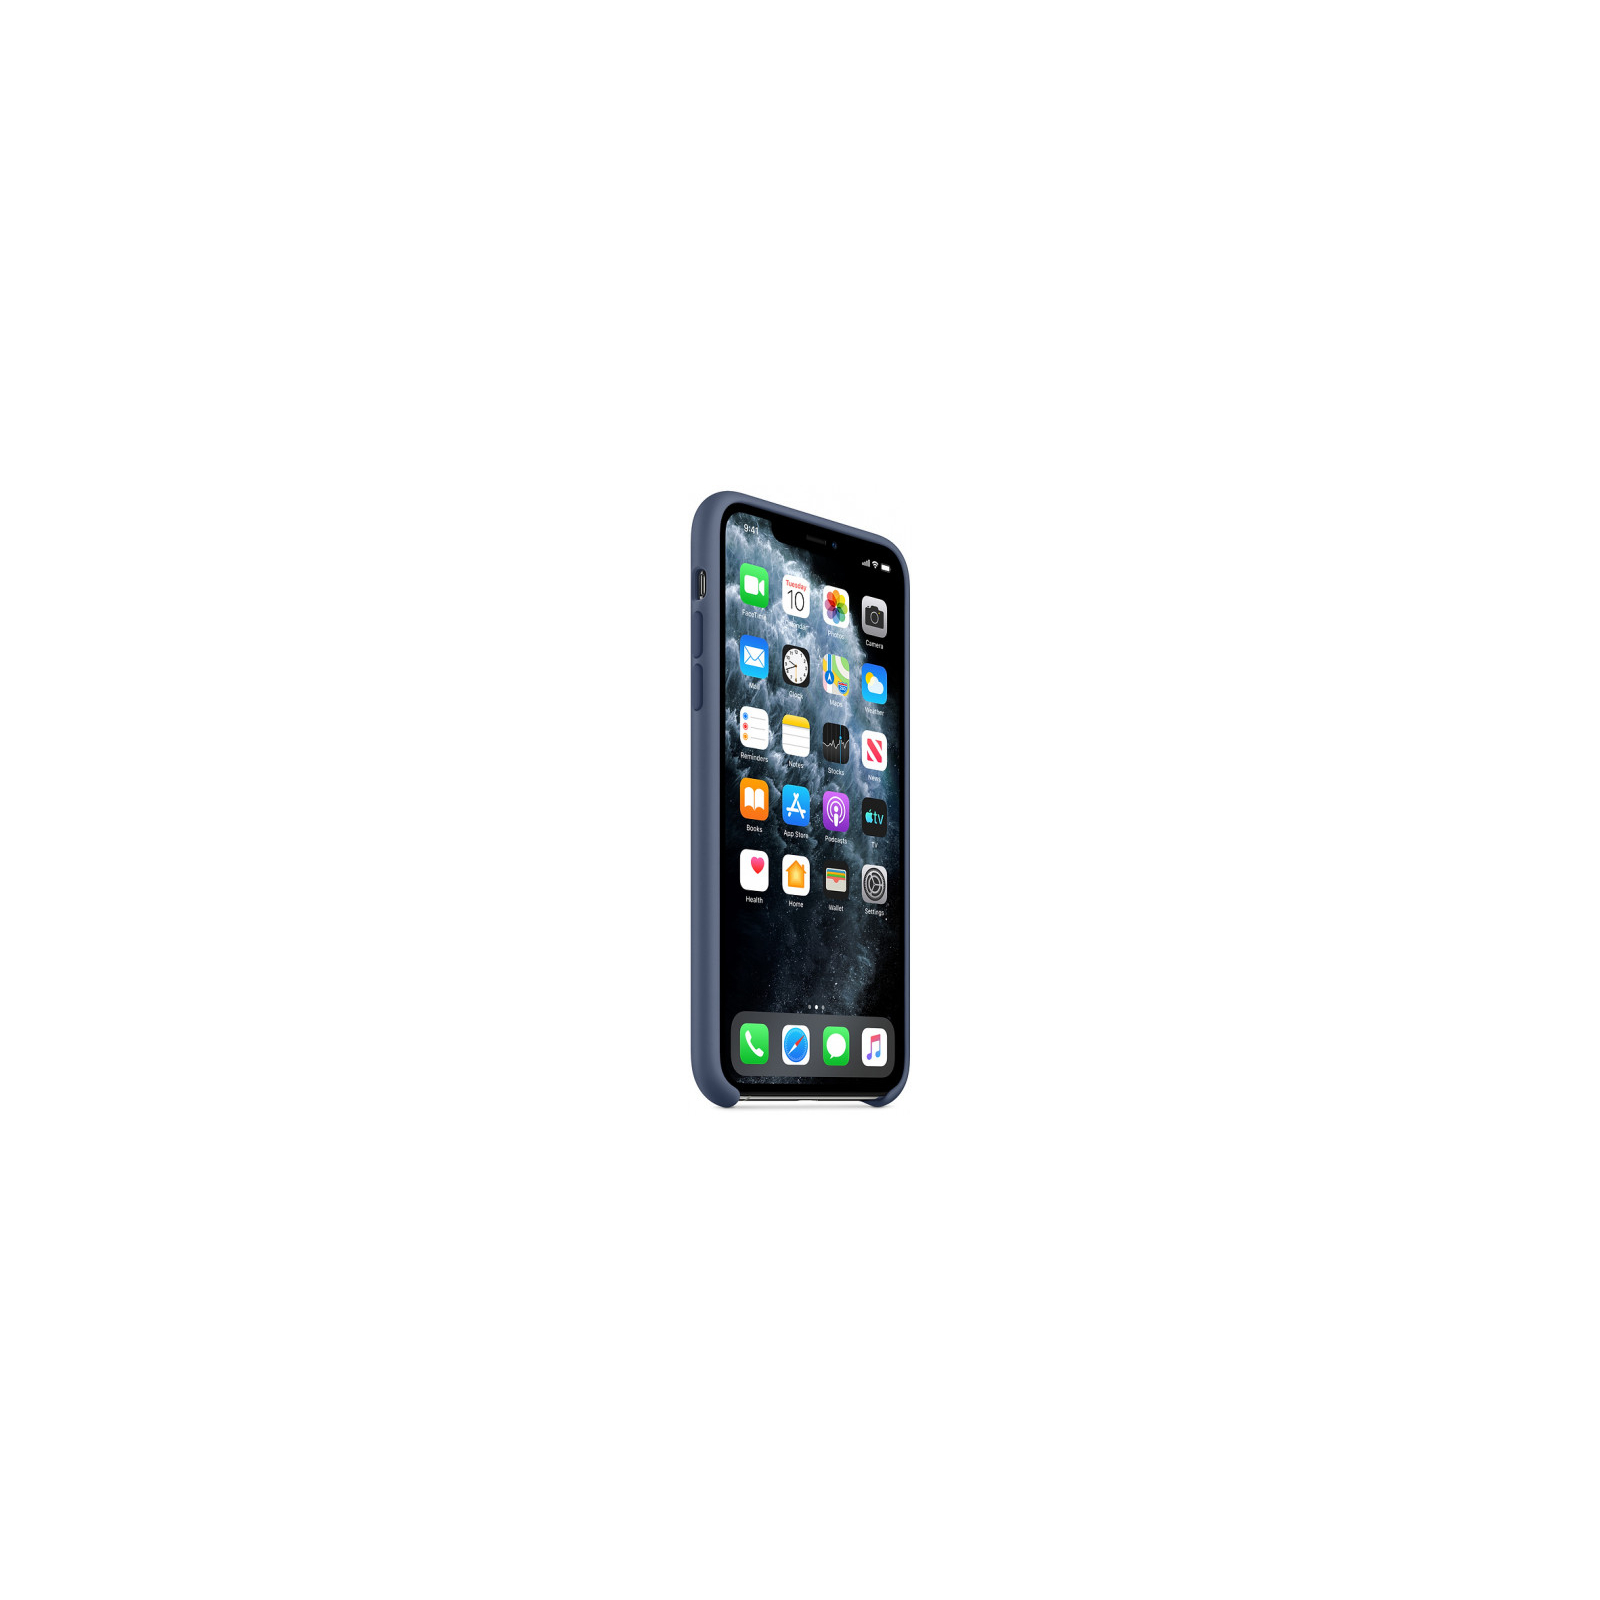 Чехол для мобильного телефона Apple iPhone 11 Pro Max Silicone Case - Alaskan Blue (MX032ZM/A) изображение 5